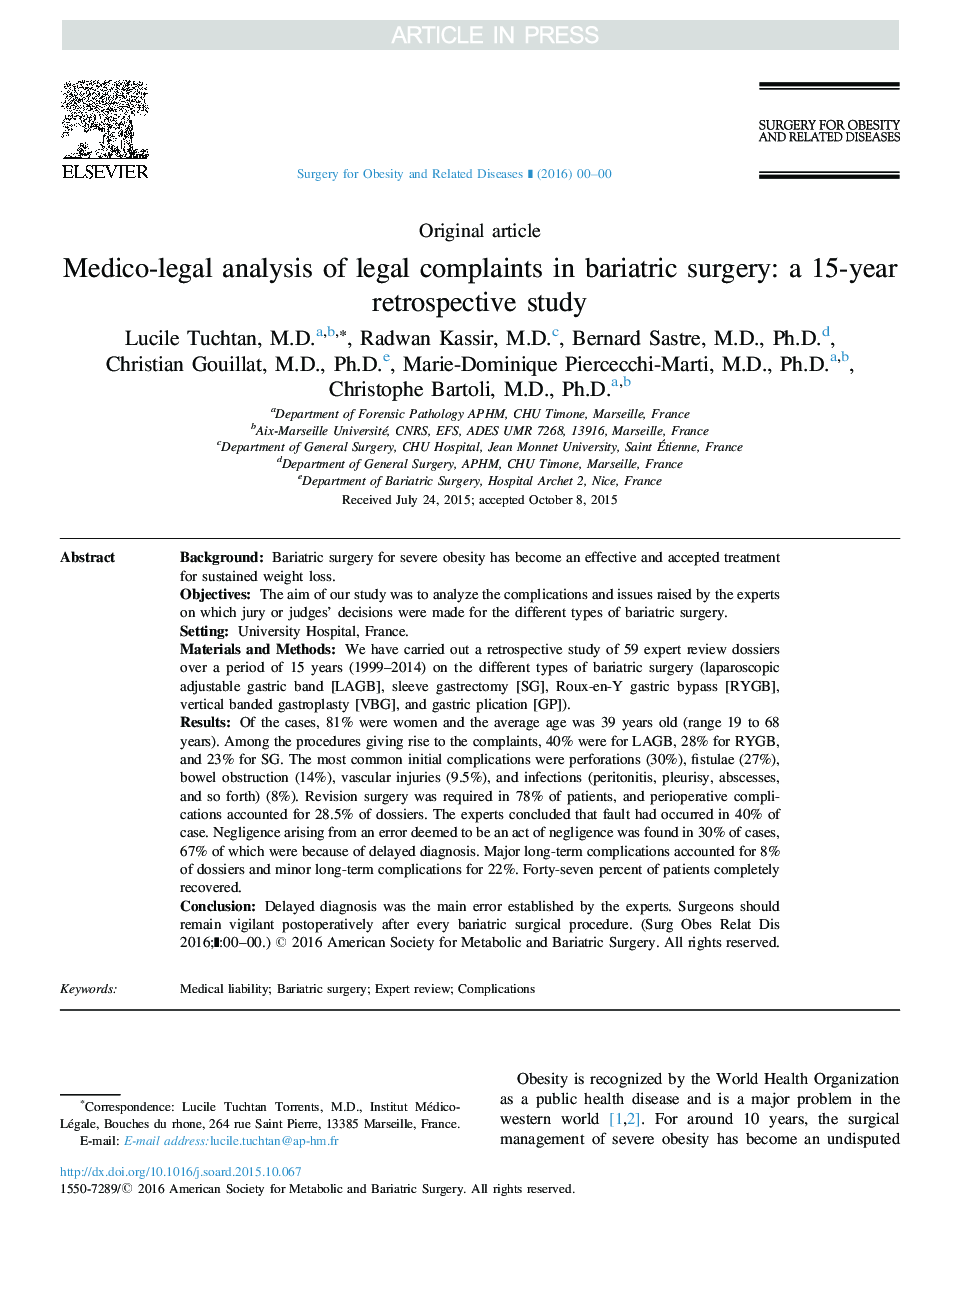 تجزیه و تحلیل پزشکی و قانونی شکایت های حقوقی در جراحی بارداری: یک مطالعه گذشته نگر 15 ساله 